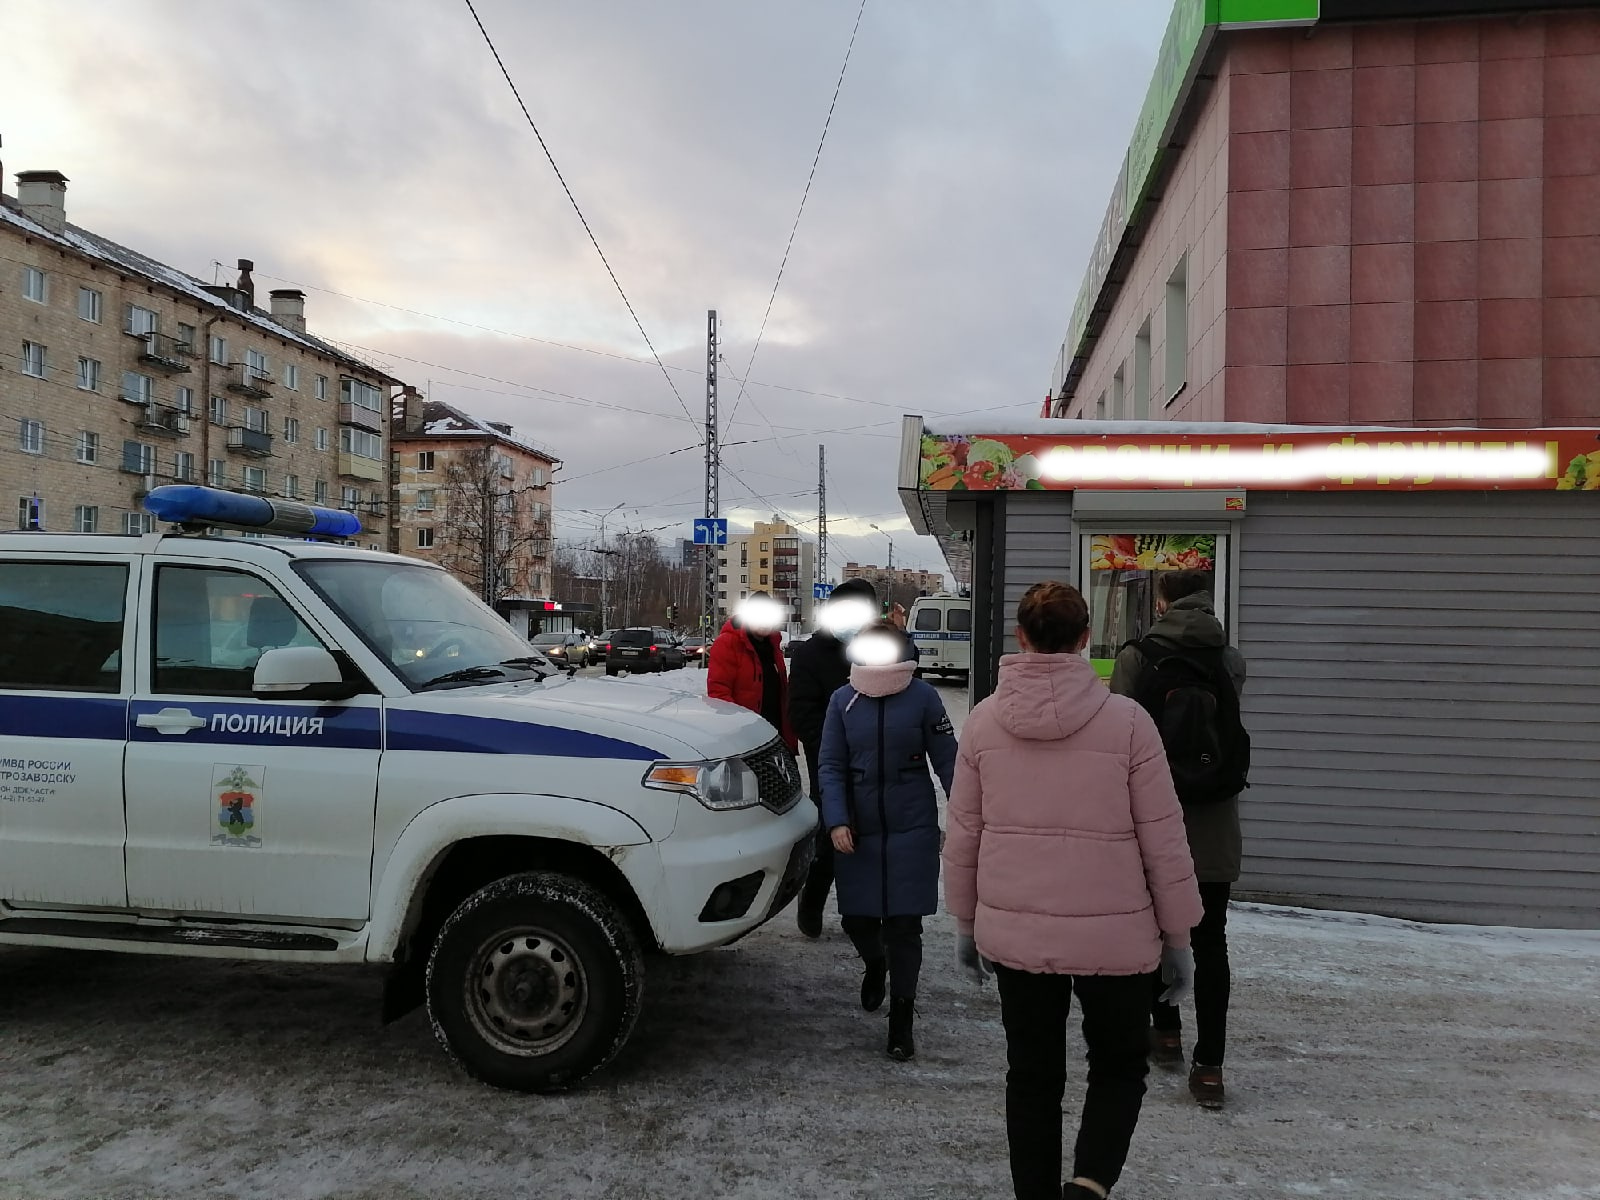 Посетителей Центрального рынка в Петрозаводске вновь эвакуировали из-за сообщения о бомбе (ФОТО)